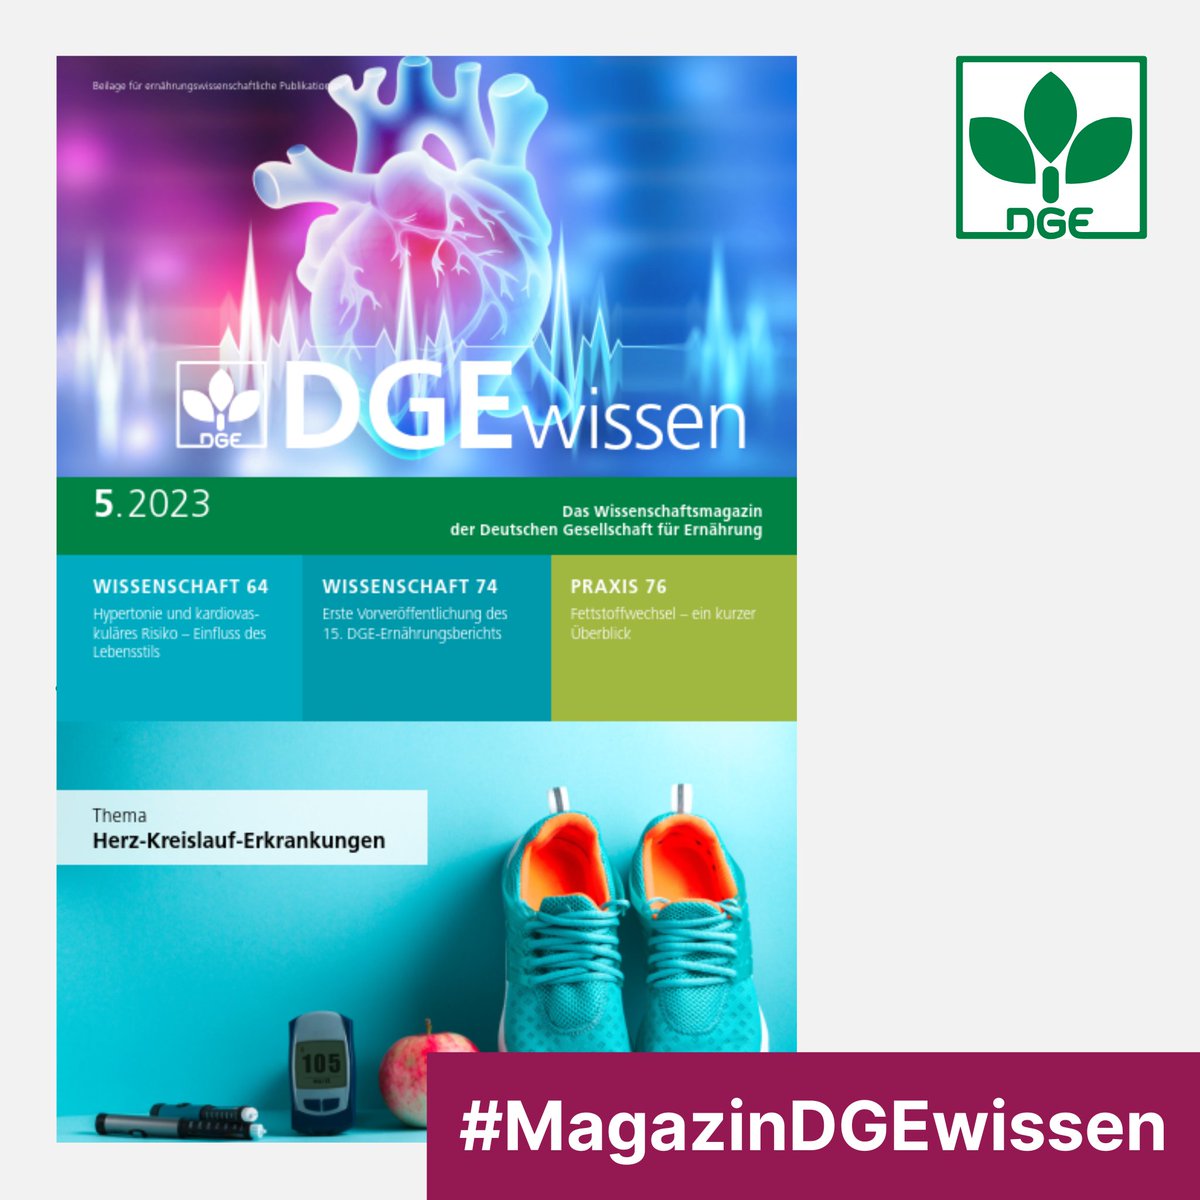 Neu: Die aktuelle Ausgabe #MagazinDGEwissen ist erschienen. Sie beschäftigt sich diesmal mit dem Thema: ♥️ Herz-Kreislauf-Erkrankungen

▶️ #DGE-Mitglieder erhalten das Magazin – auch digital – mit der @EUmschau kostenlos.

dge.de/wissenschaft/d…